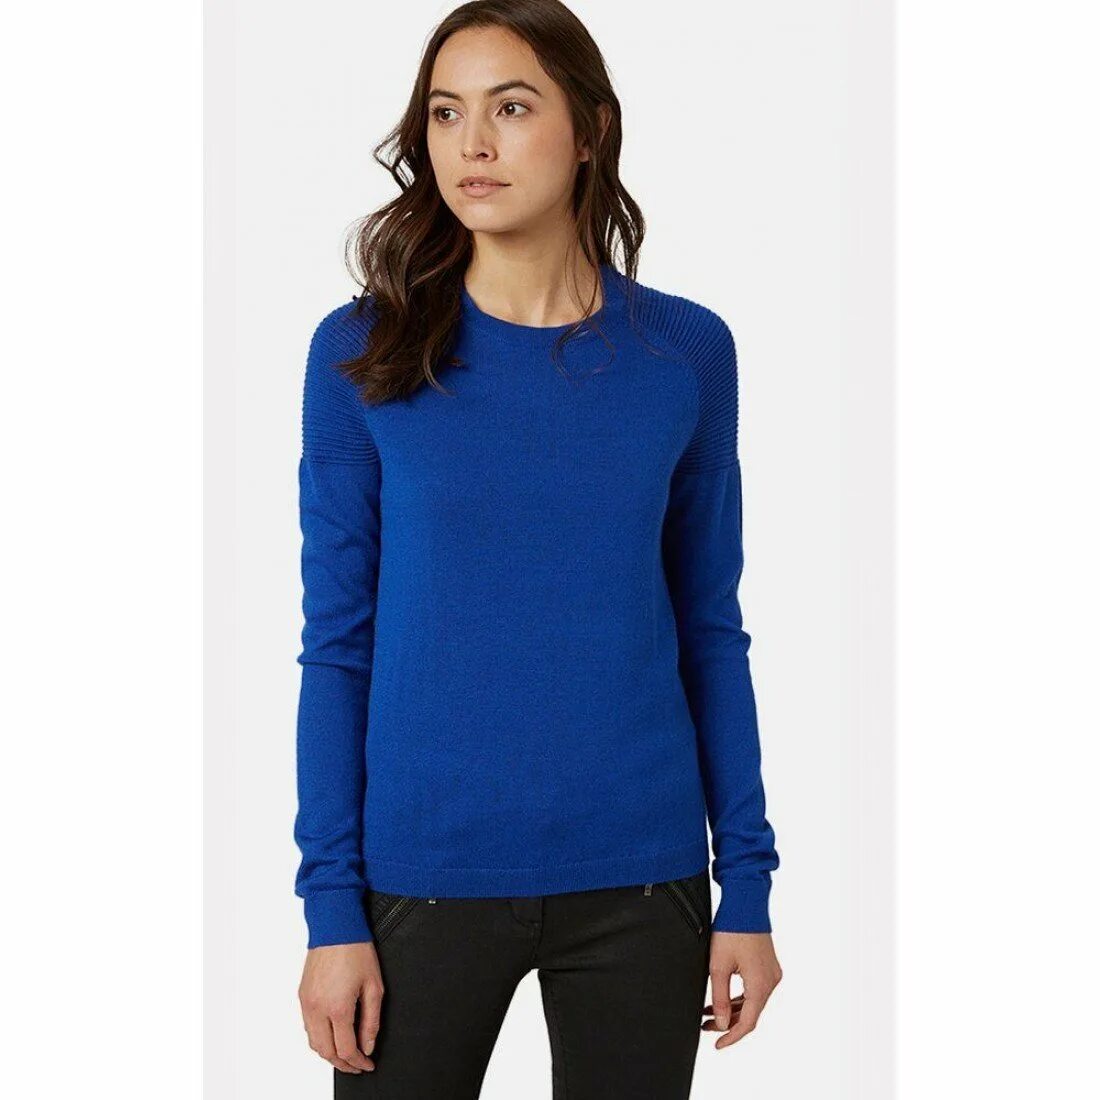 Каталог джемперов. Синий свитер женский. Синий джемпер женский. Темно синий пуловер женский. Темно синий свитер женский.